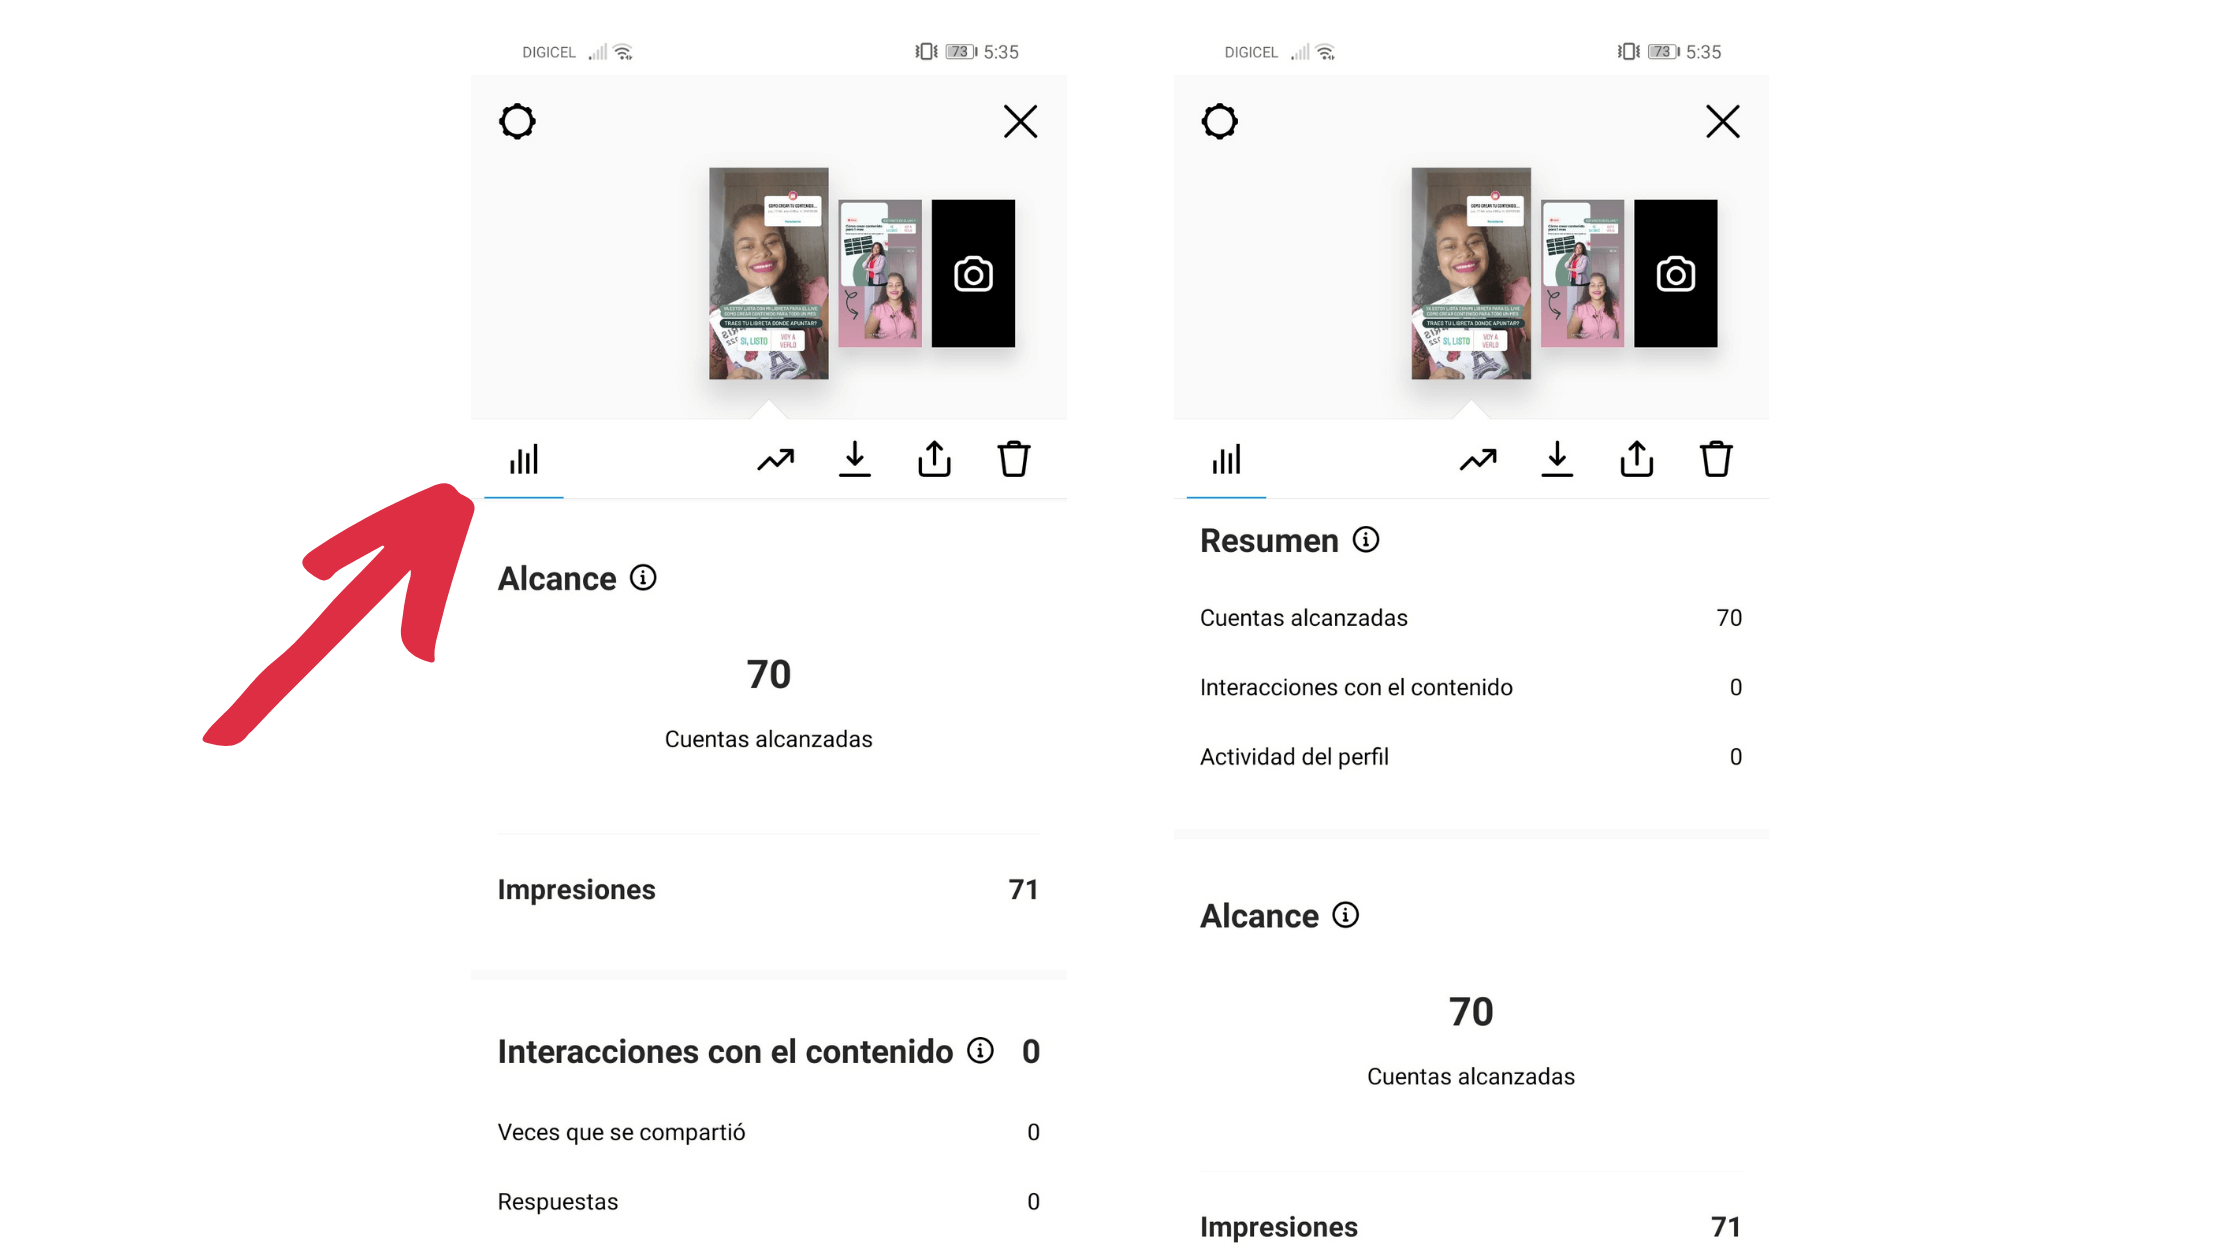 Como ver las estadísticas en las stories
historias de Instagram 
estadísticas de Instagram
como ver las estadísticas de Instagram